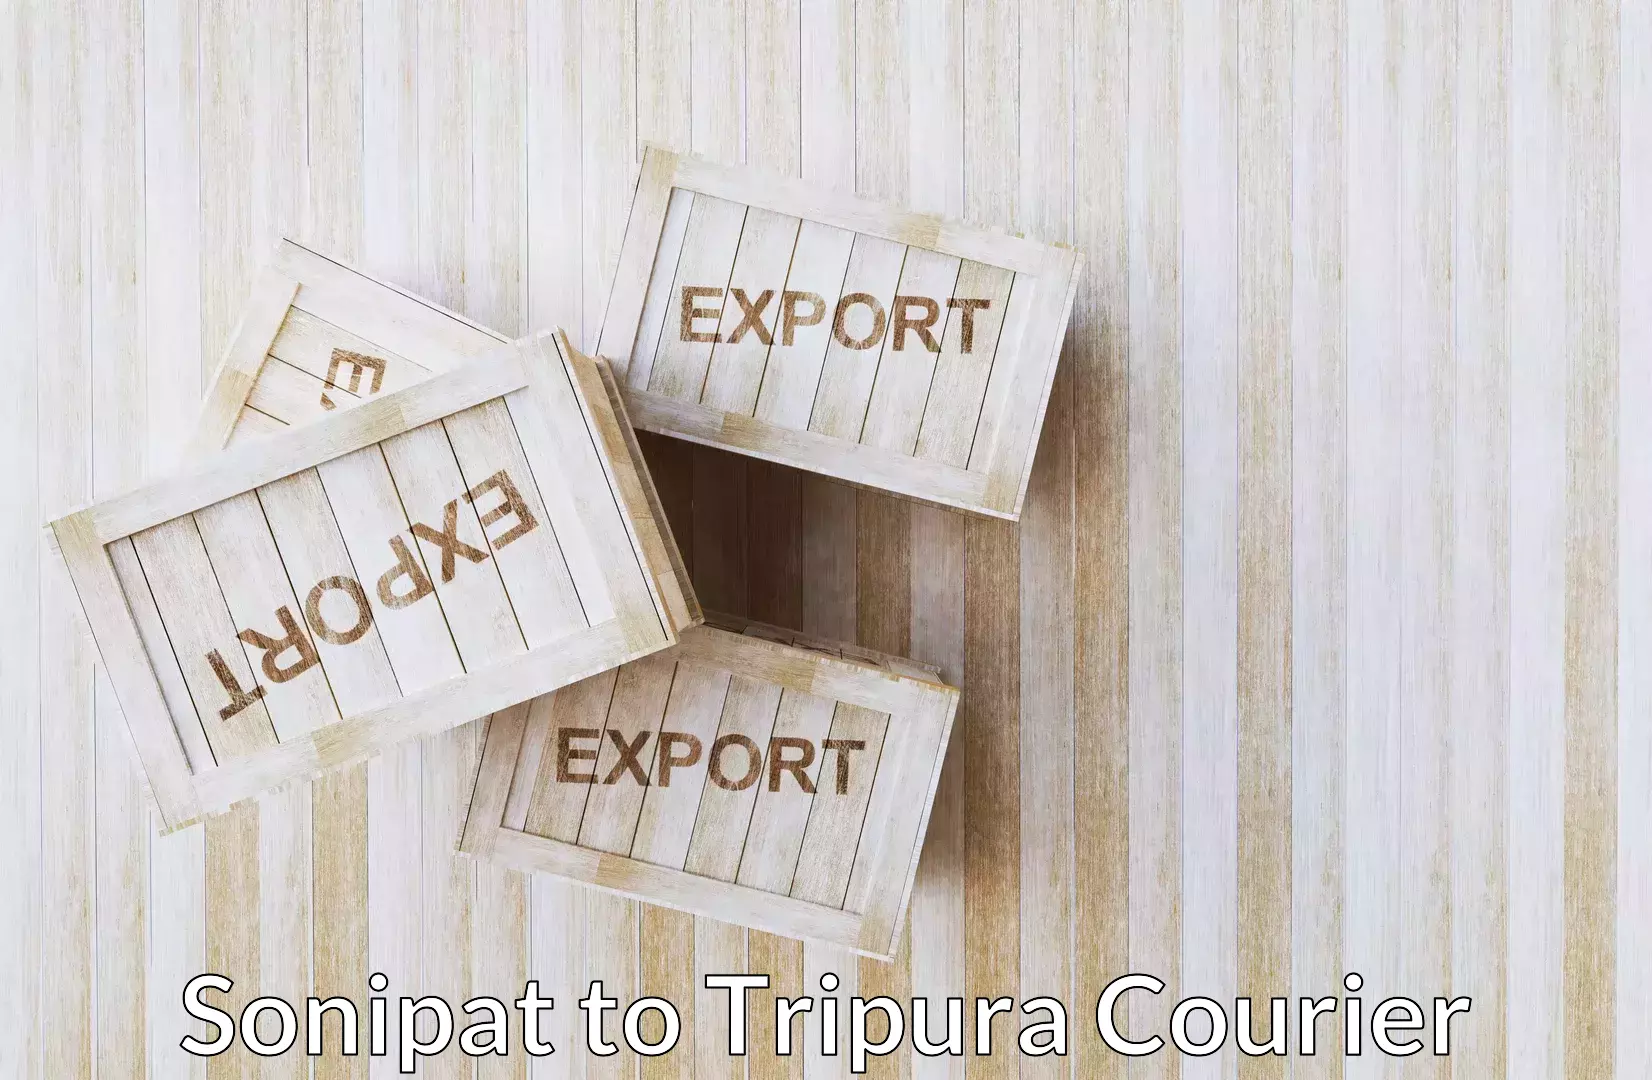 Luggage shipment logistics Sonipat to Udaipur Tripura